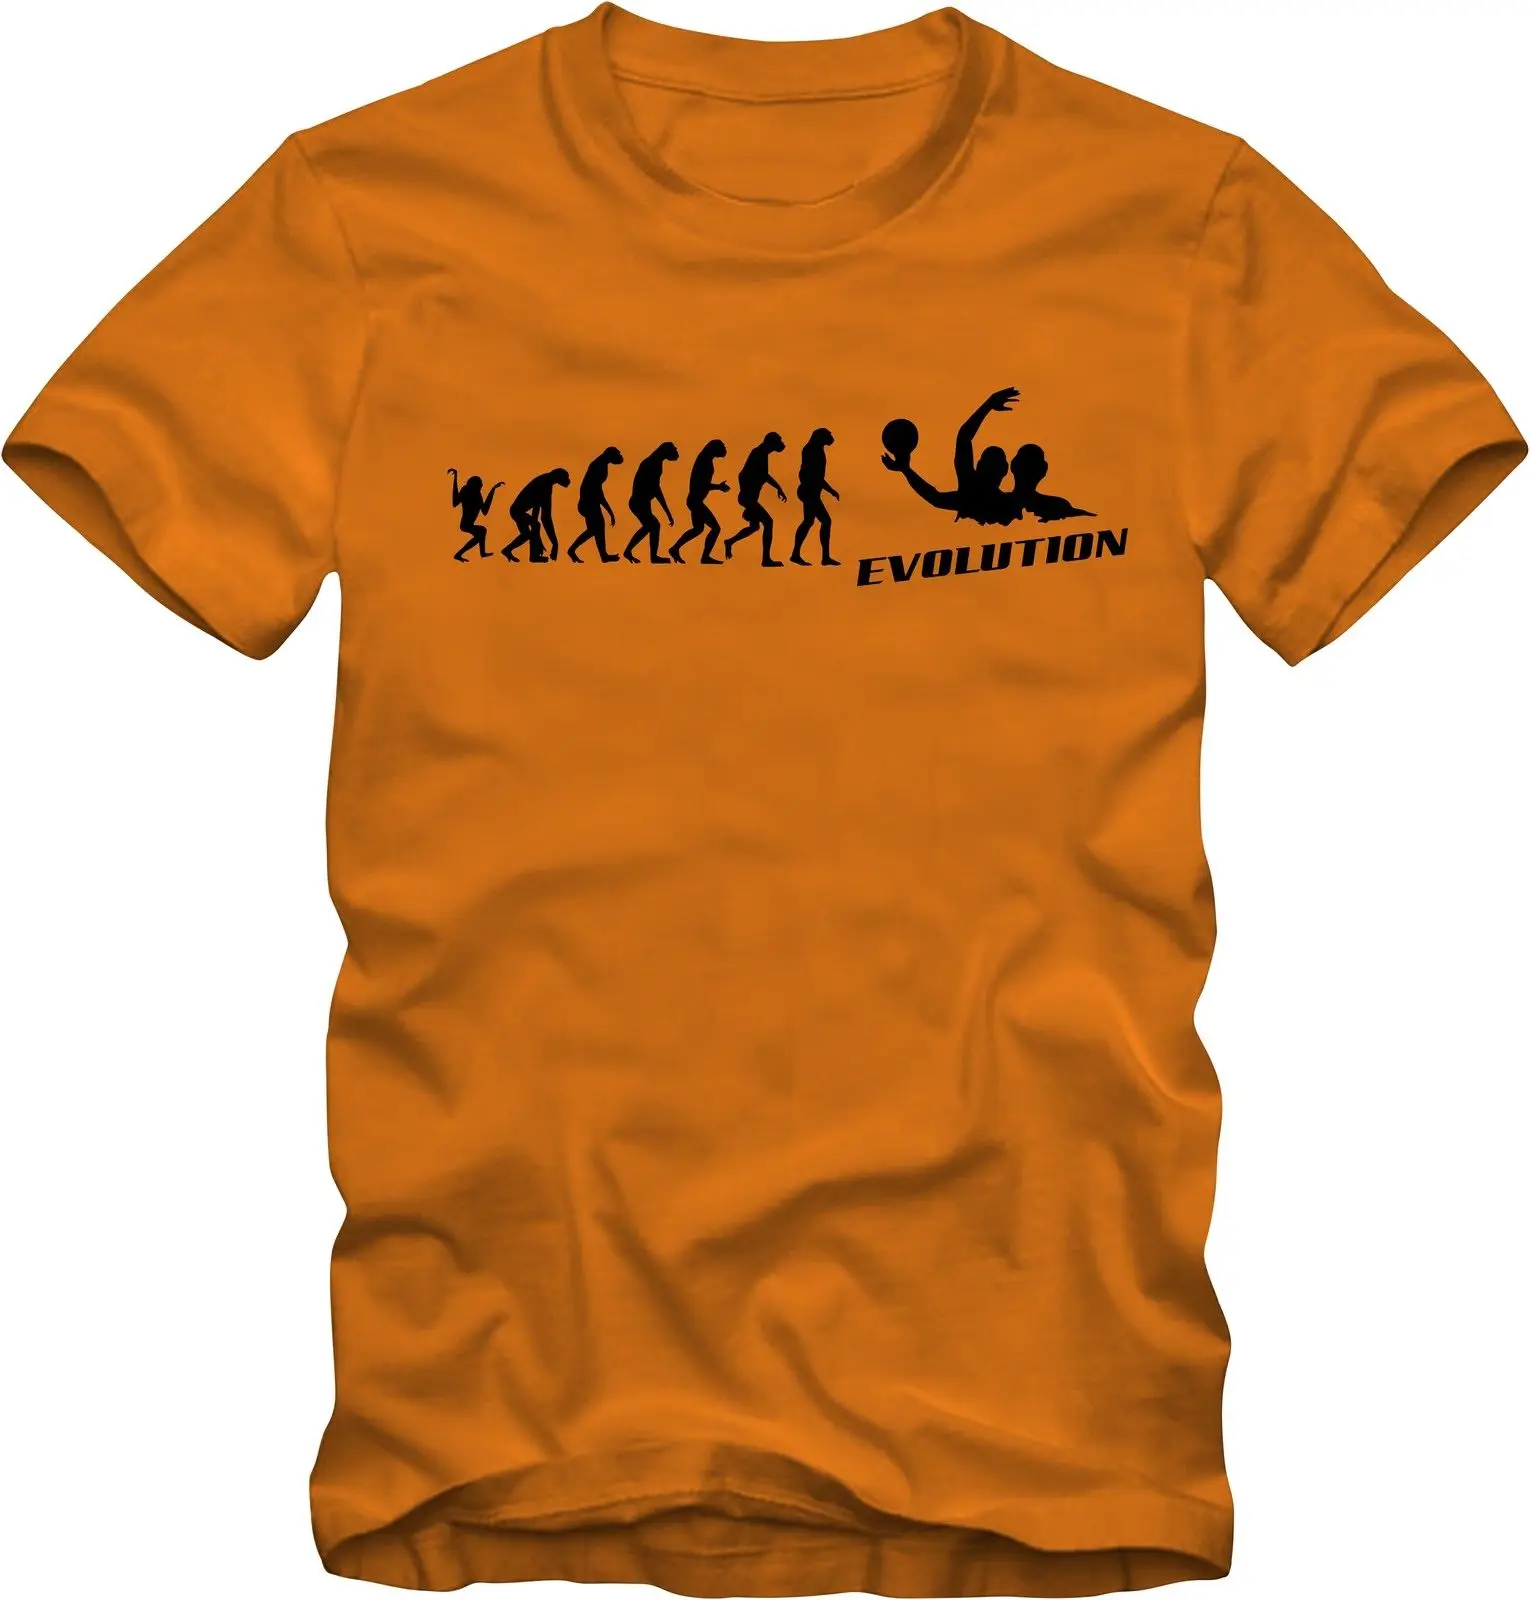 Camiseta de moda para hombre, camisa de Wasserball, evolución, Waterpolo, verschiediebaby, novedad...